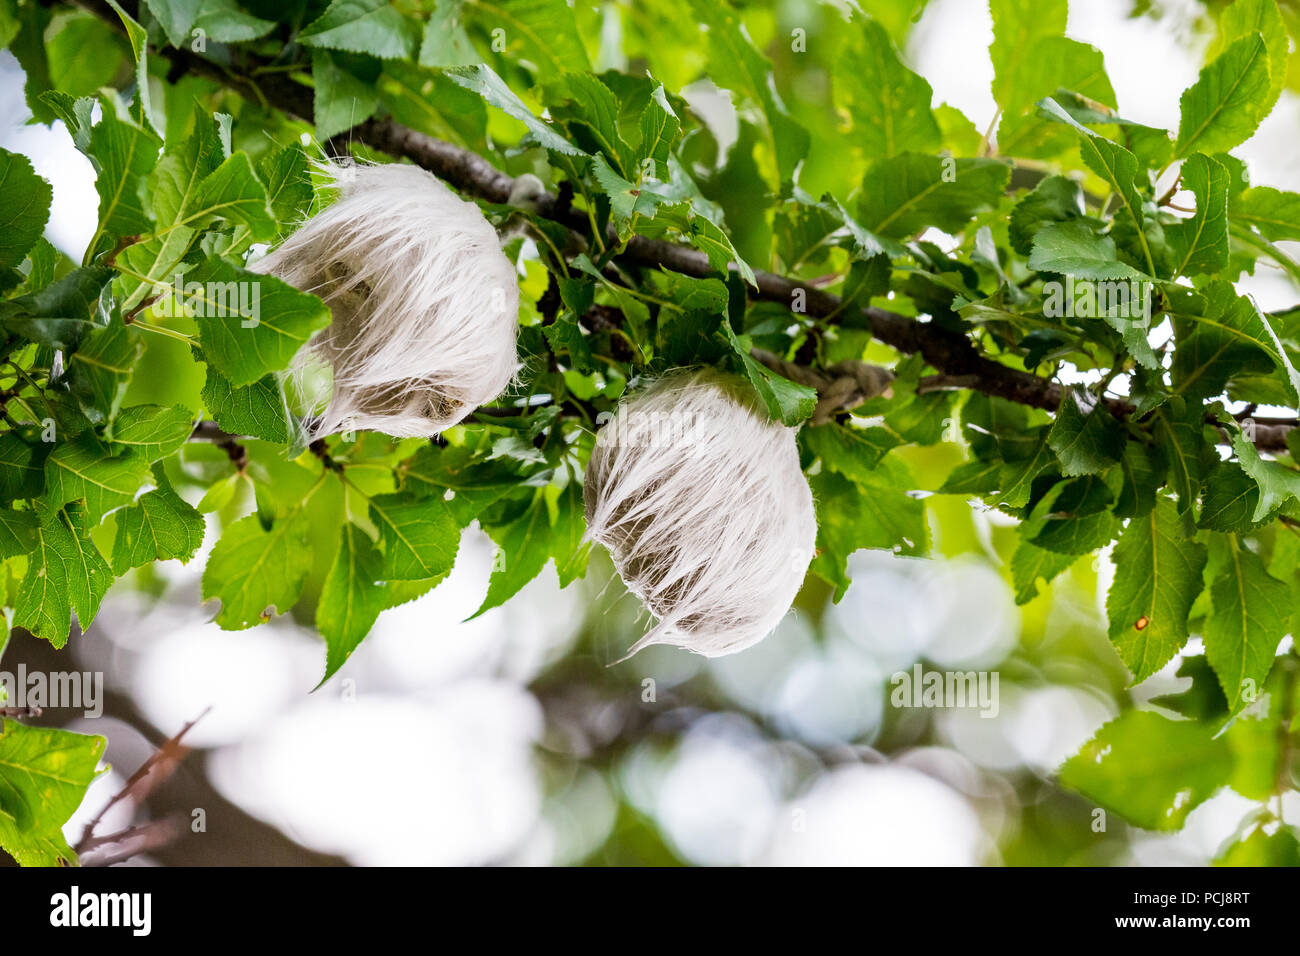 Due misteriosi pelose cose bianco avente le dimensioni di una palla da tennis che cresce su wild susino a monte Vitosha vicino al villaggio di Bistritza, Sofia, Bulgaria Foto Stock